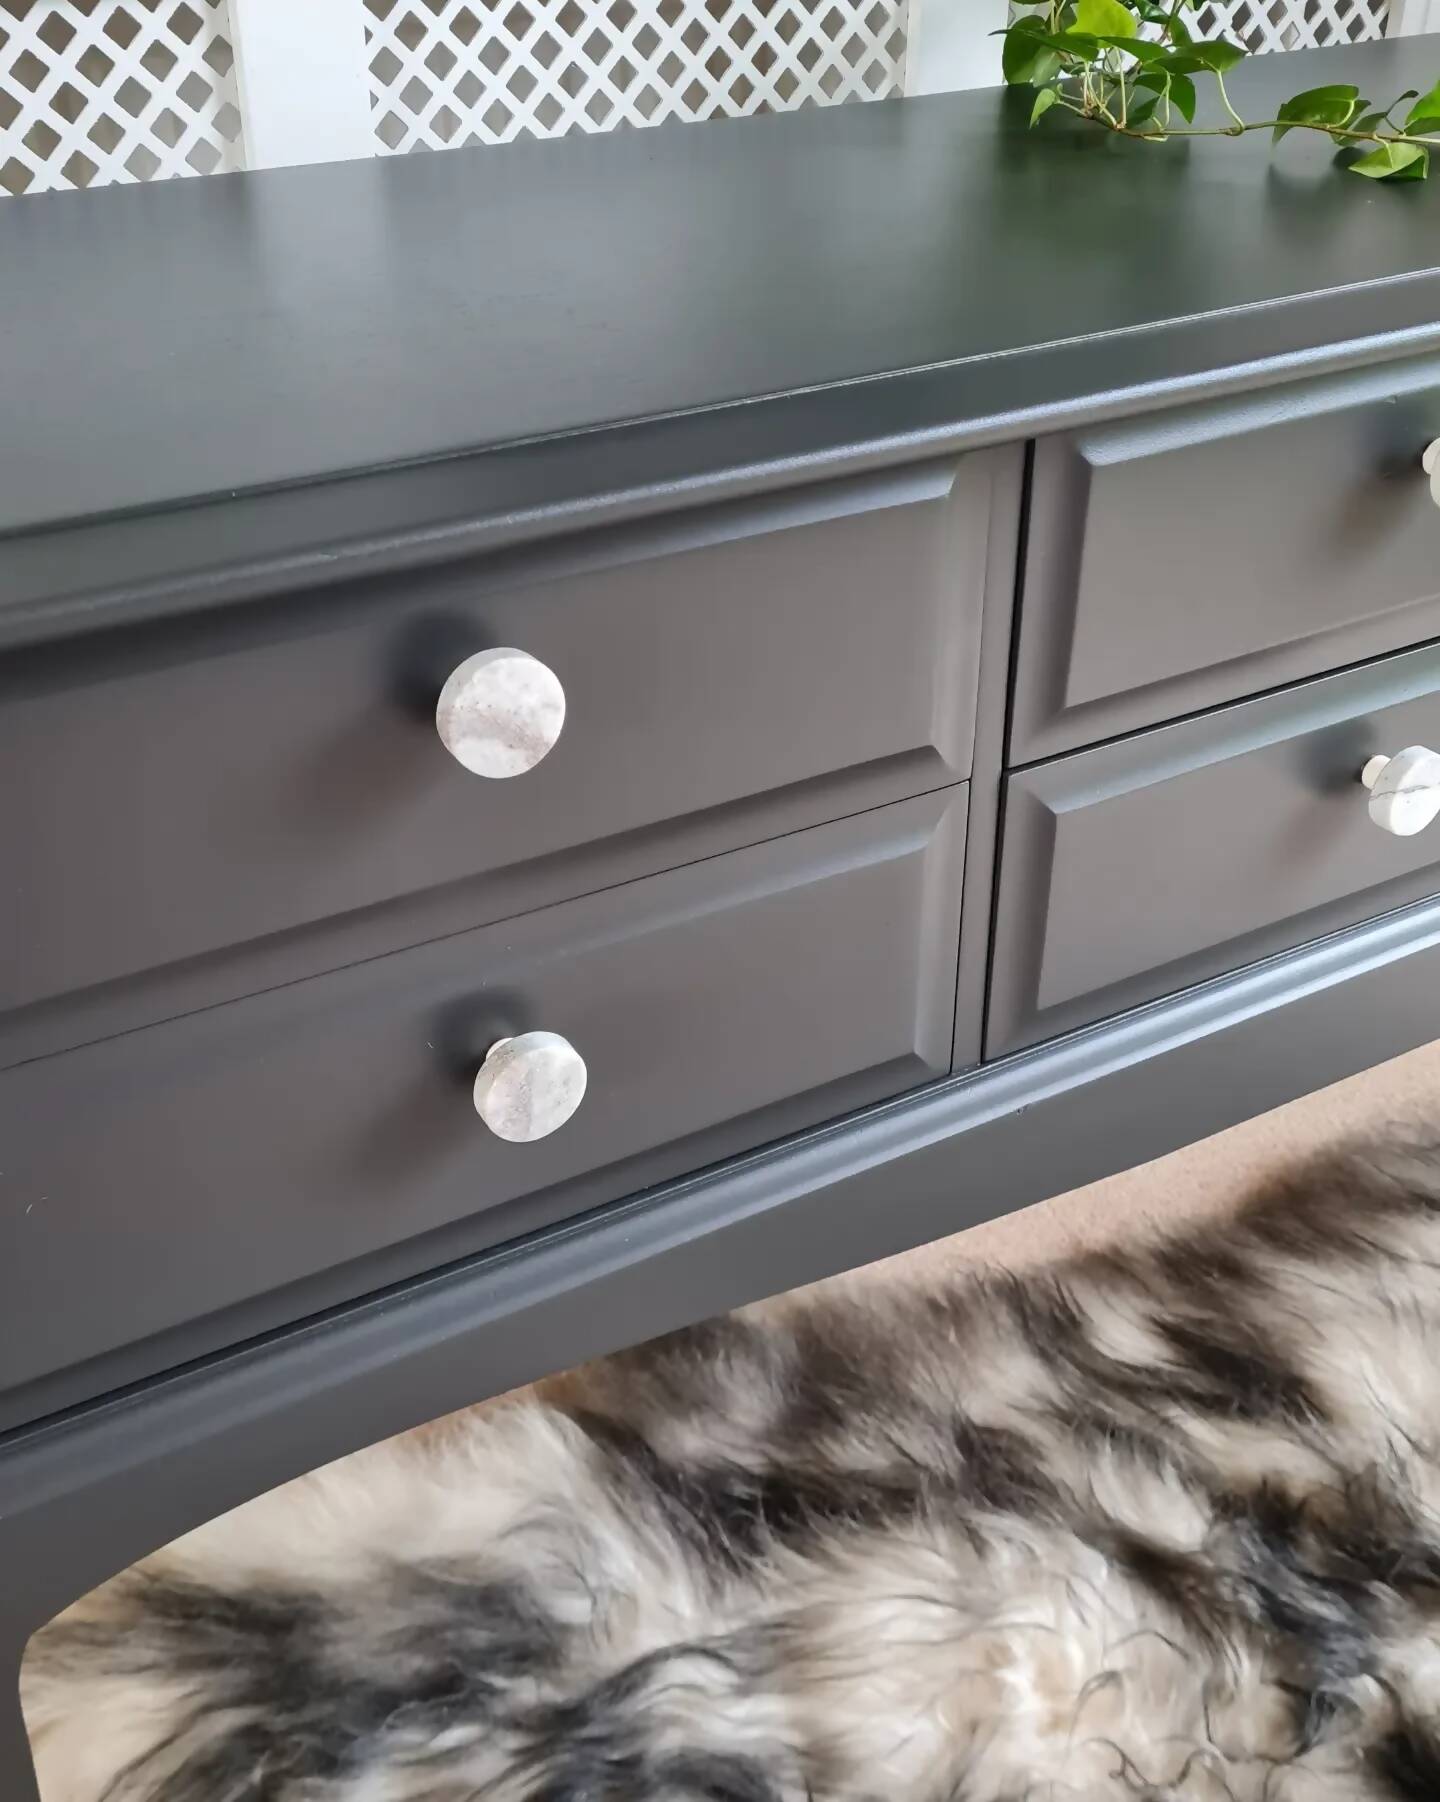 Stag 6 drawer sideboard/dresser